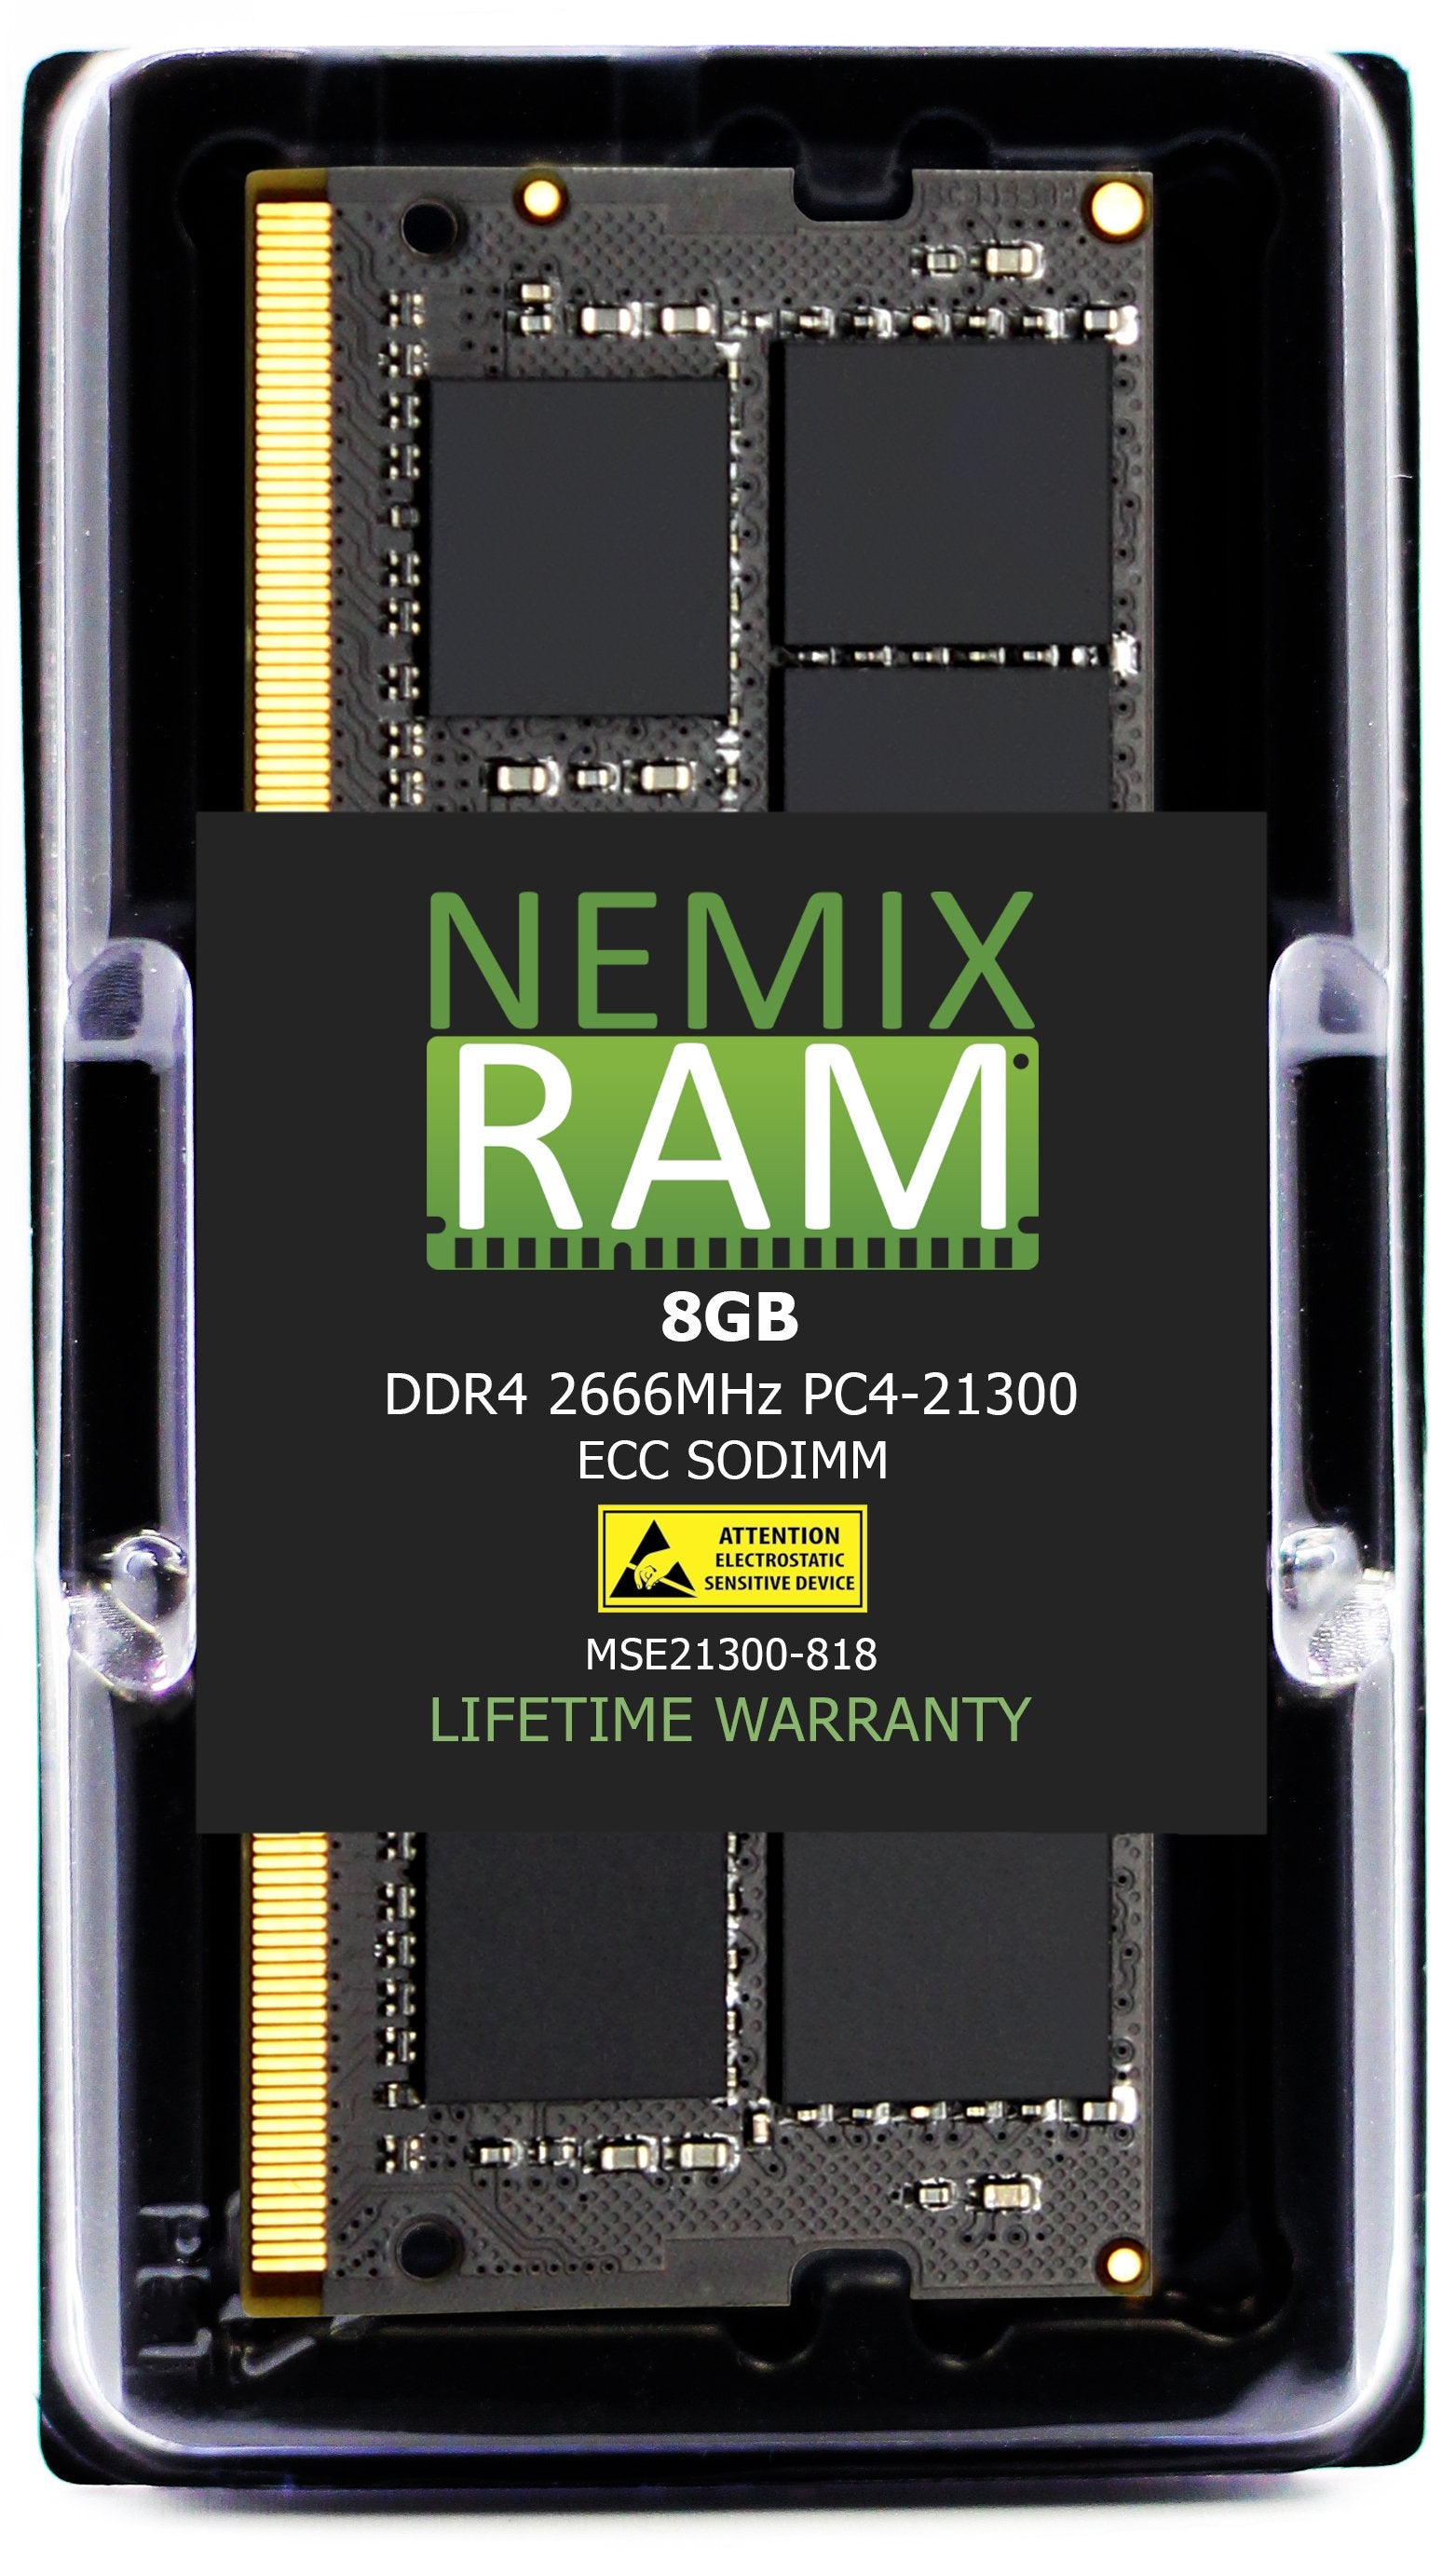 8GB DMEM-DR4 2666MHZ PC4-21300 ECC SODIMM Compatible with Supermicro MEM-DR480L-CL03-ES26